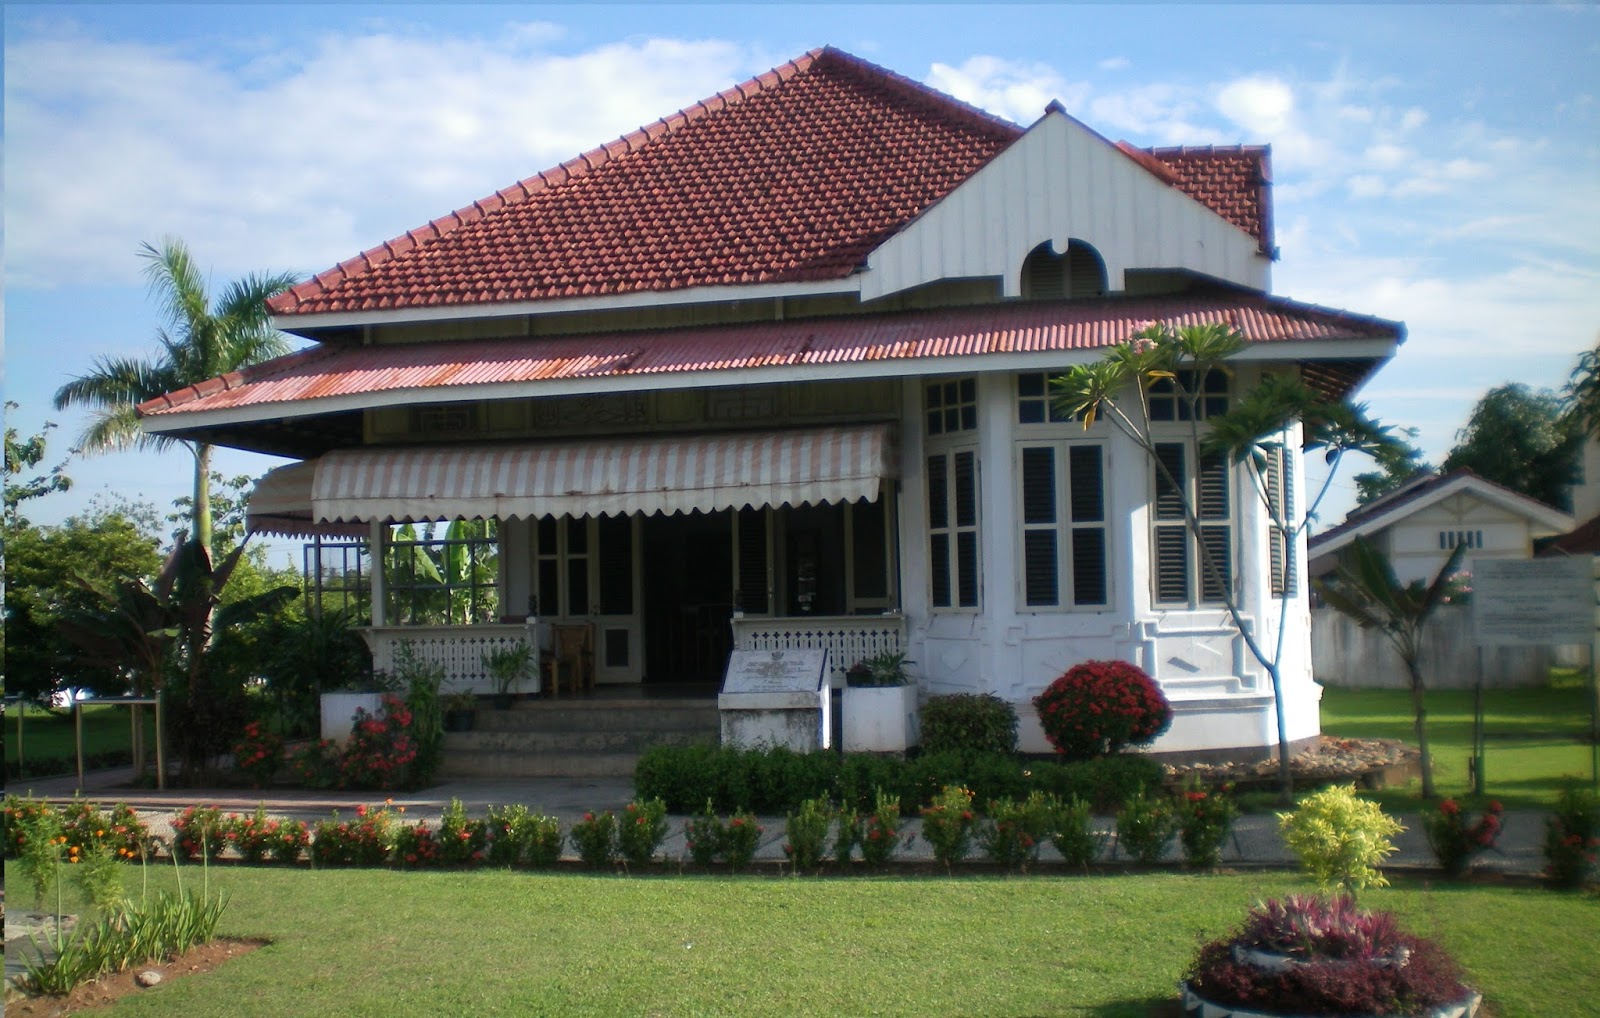 Gambar Desain Rumah Zaman Kolonial Belanda Colonial Houses Indonesia ...